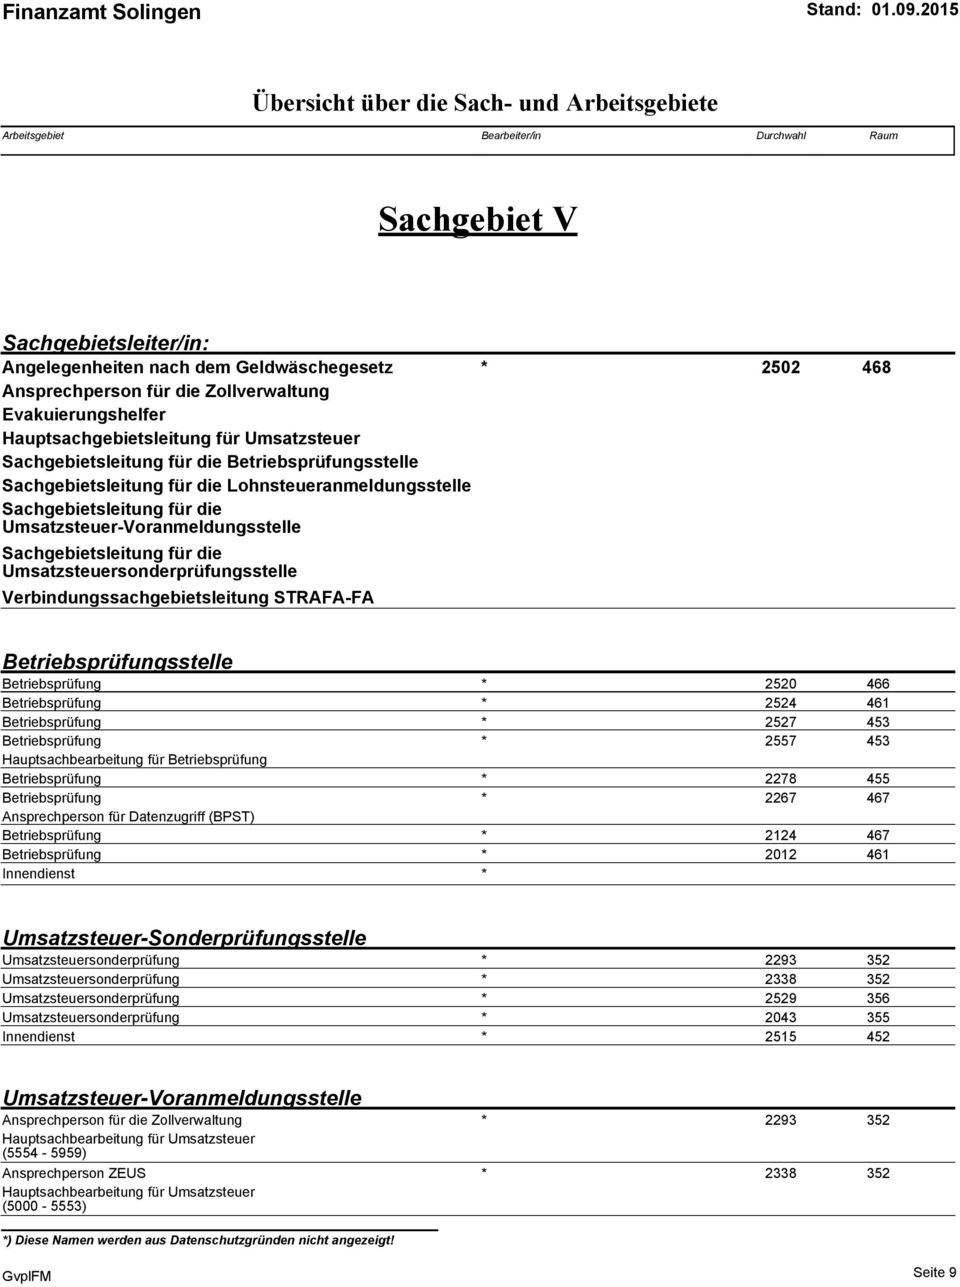 Umsatzsteuersonderprüfungsstelle Verbindungssachgebietsleitung STRAFA-FA Betriebsprüfungsstelle Betriebsprüfung * (0.